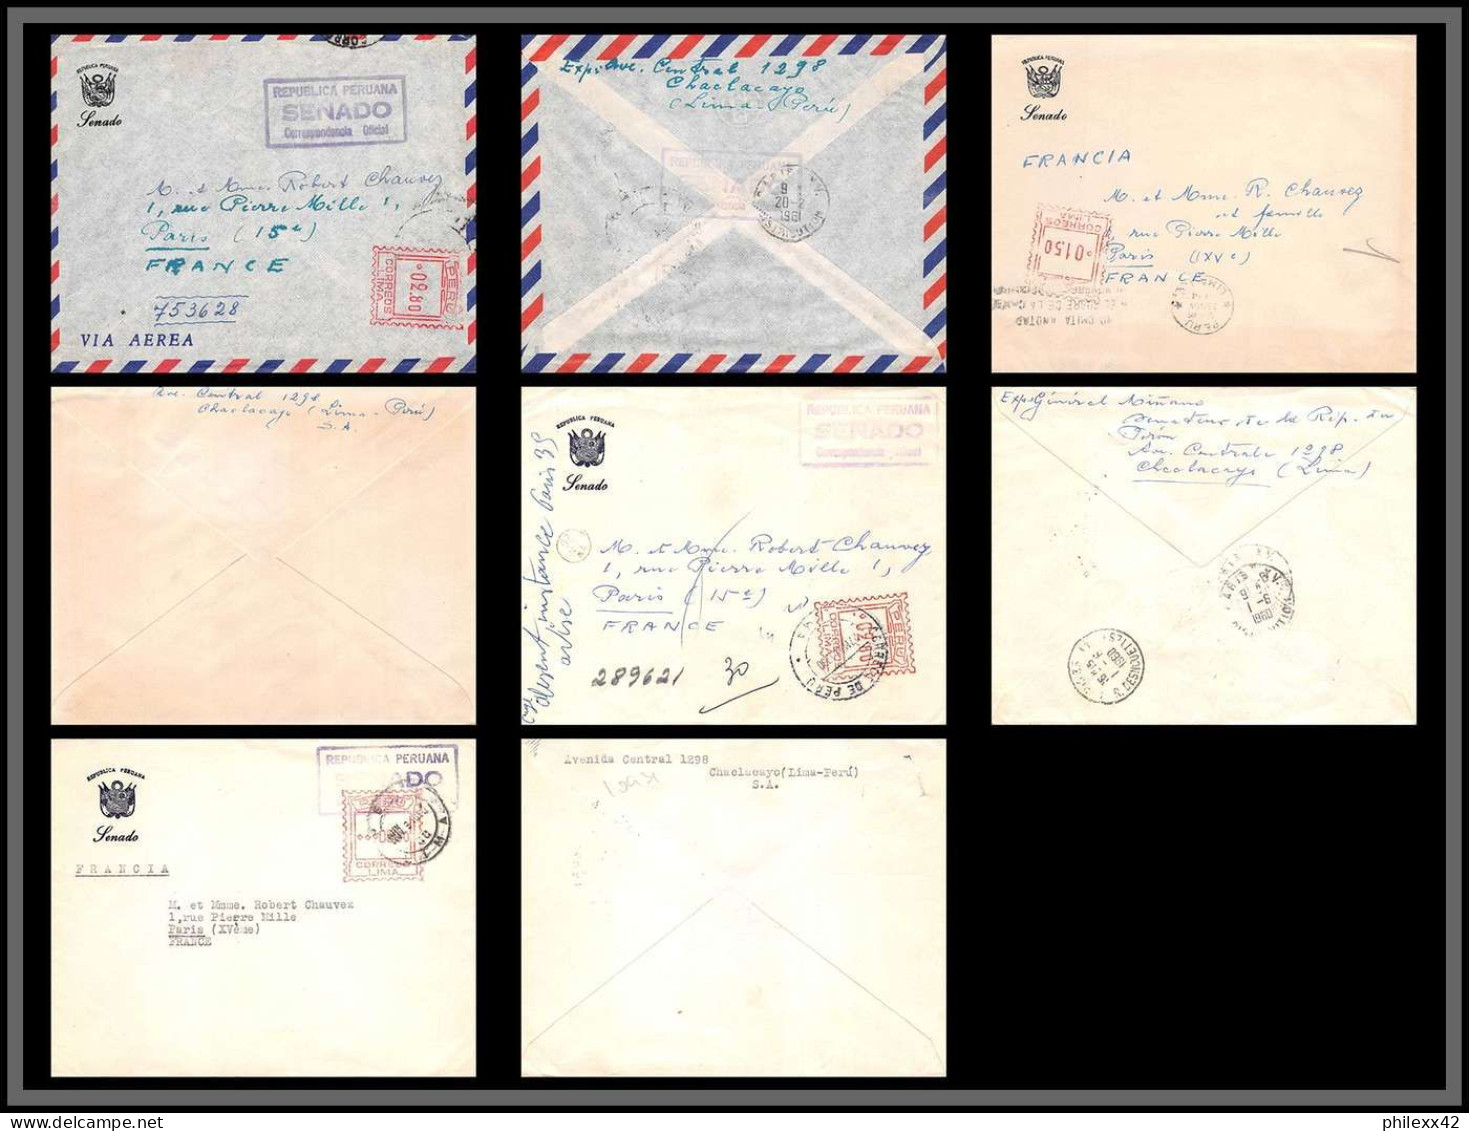 10931 SENADO CORRESPONDENCIA OFICIAL 1960 Lettre Cover Perou Peru  - Perú